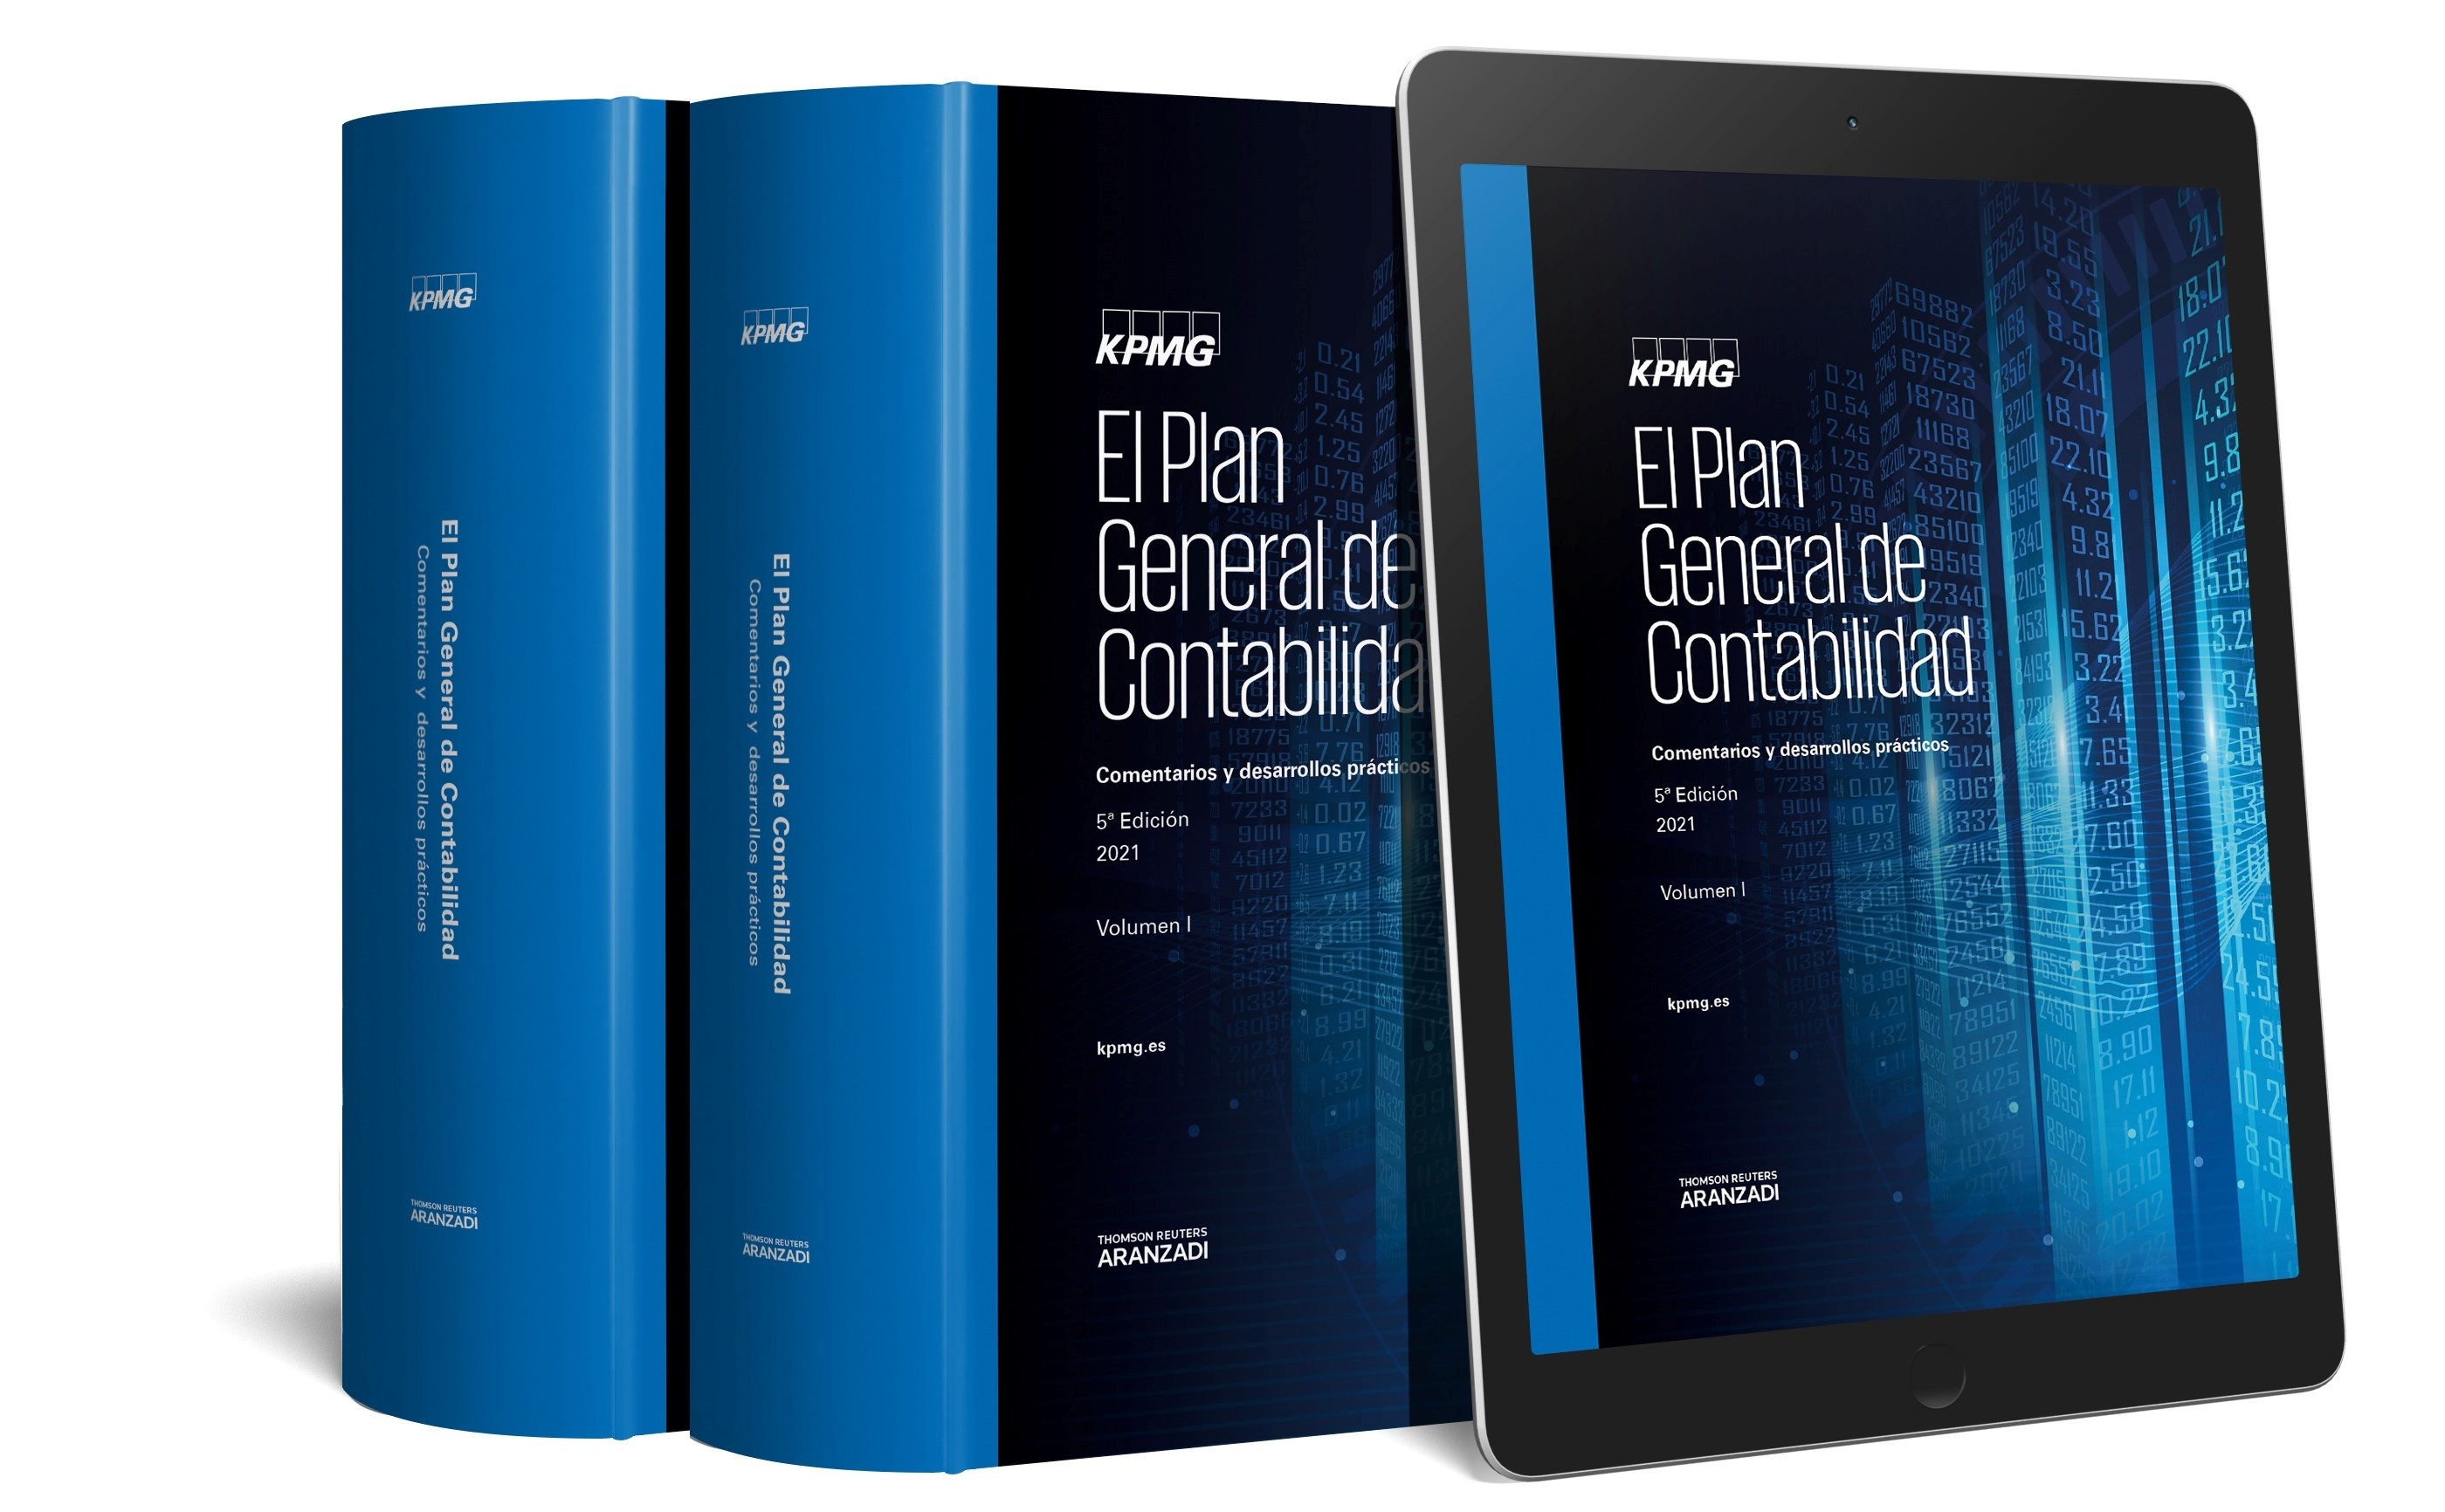 Plan general de contabilidad, El. Comentarios y desarrollos prácticos (3 vols.)